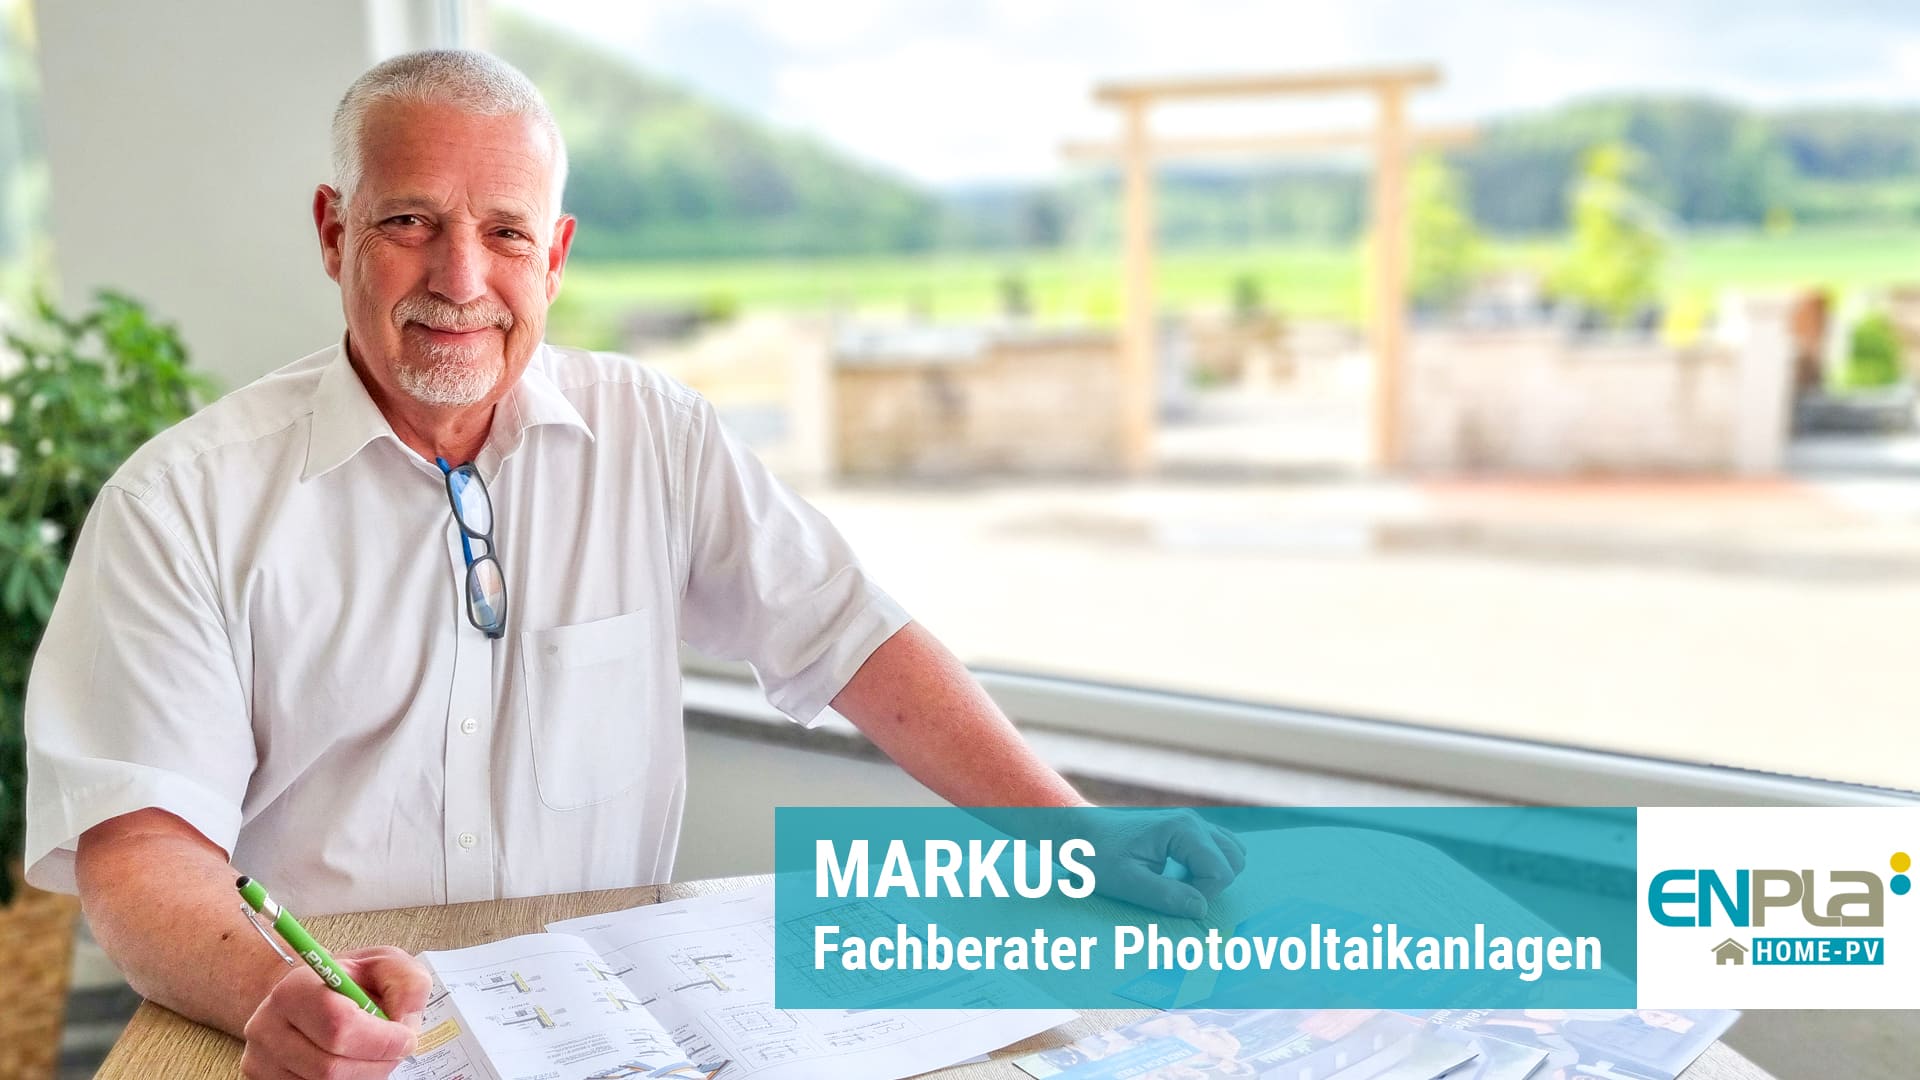 ENPLA persönlich: Unser PV-Fachberater Markus